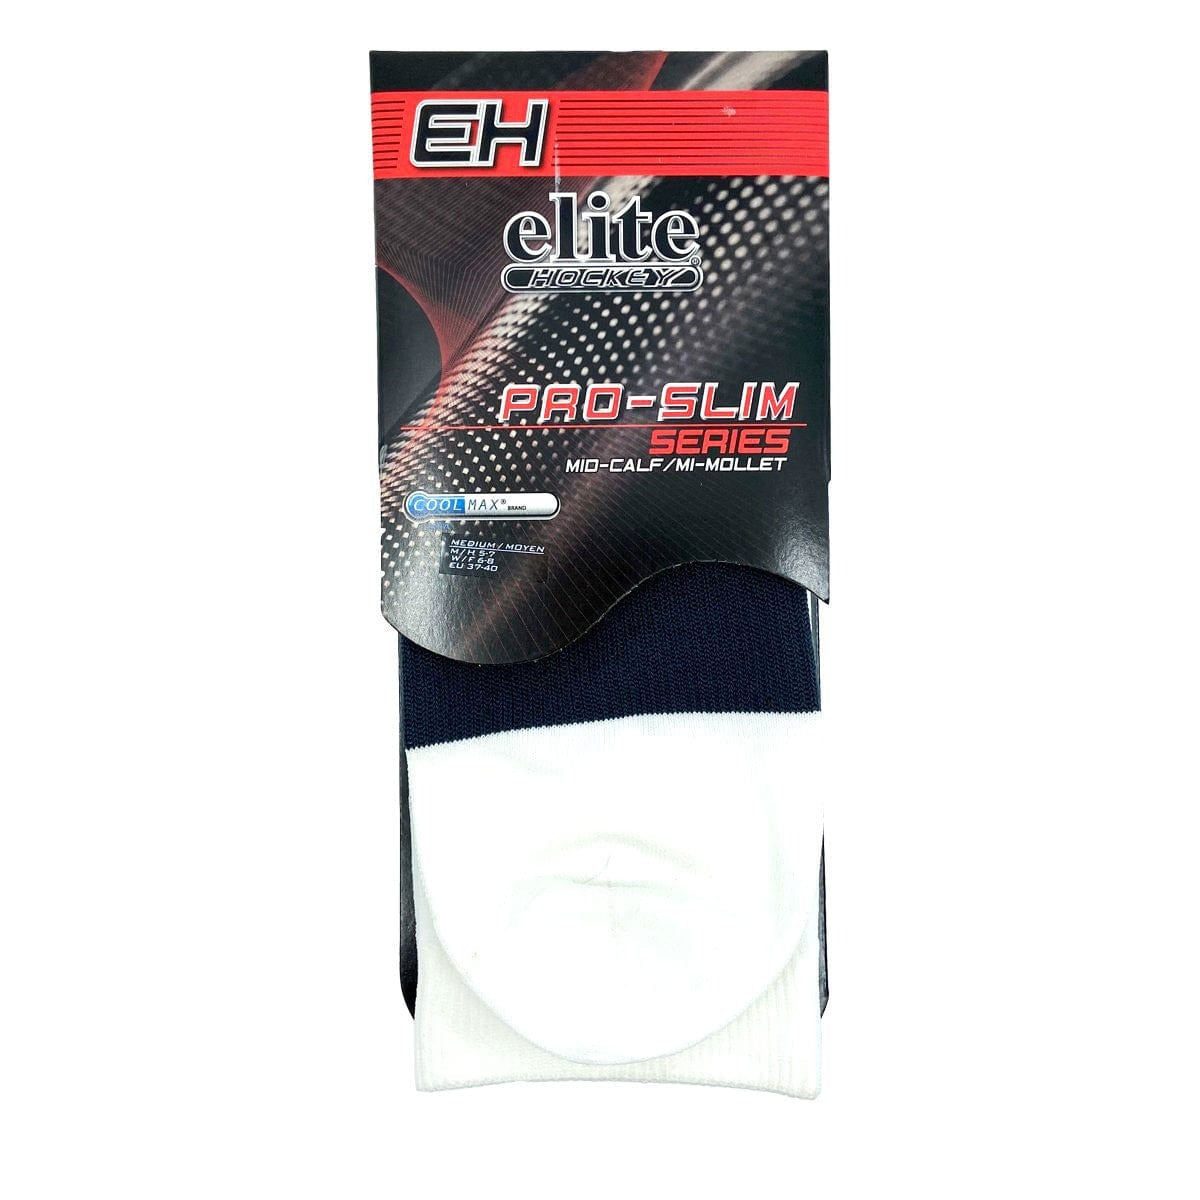 Elite Pro Slim Coolmax Skate Socks - Mid Calf